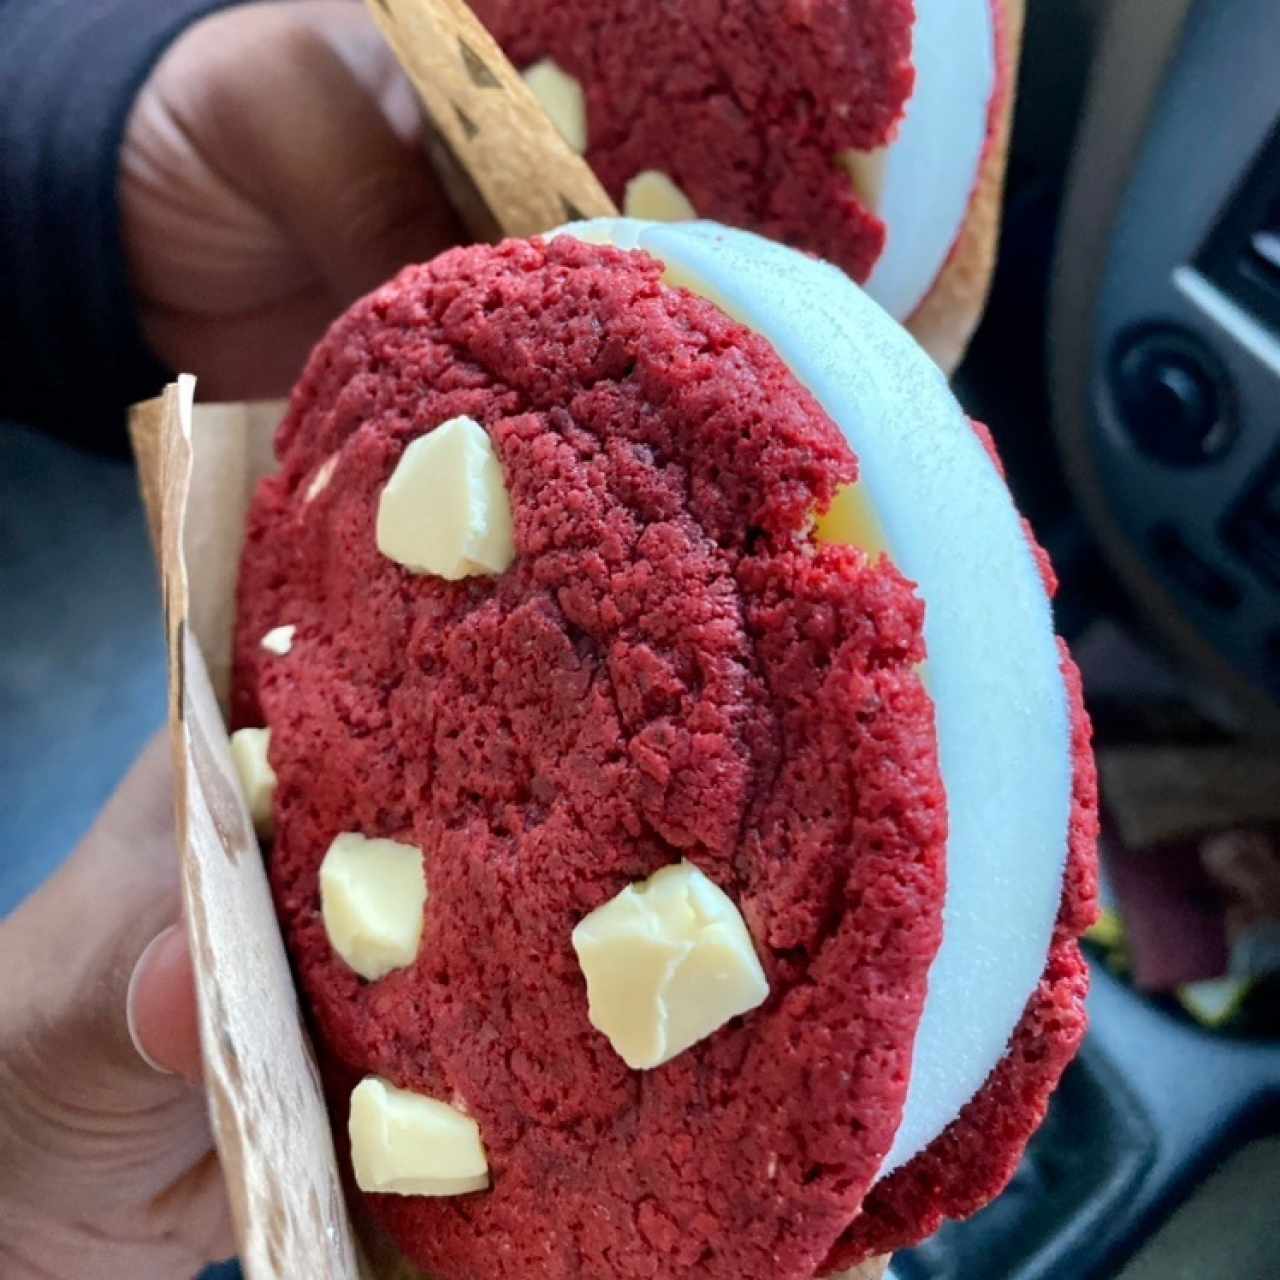 Red velvet ice cream sandwich 